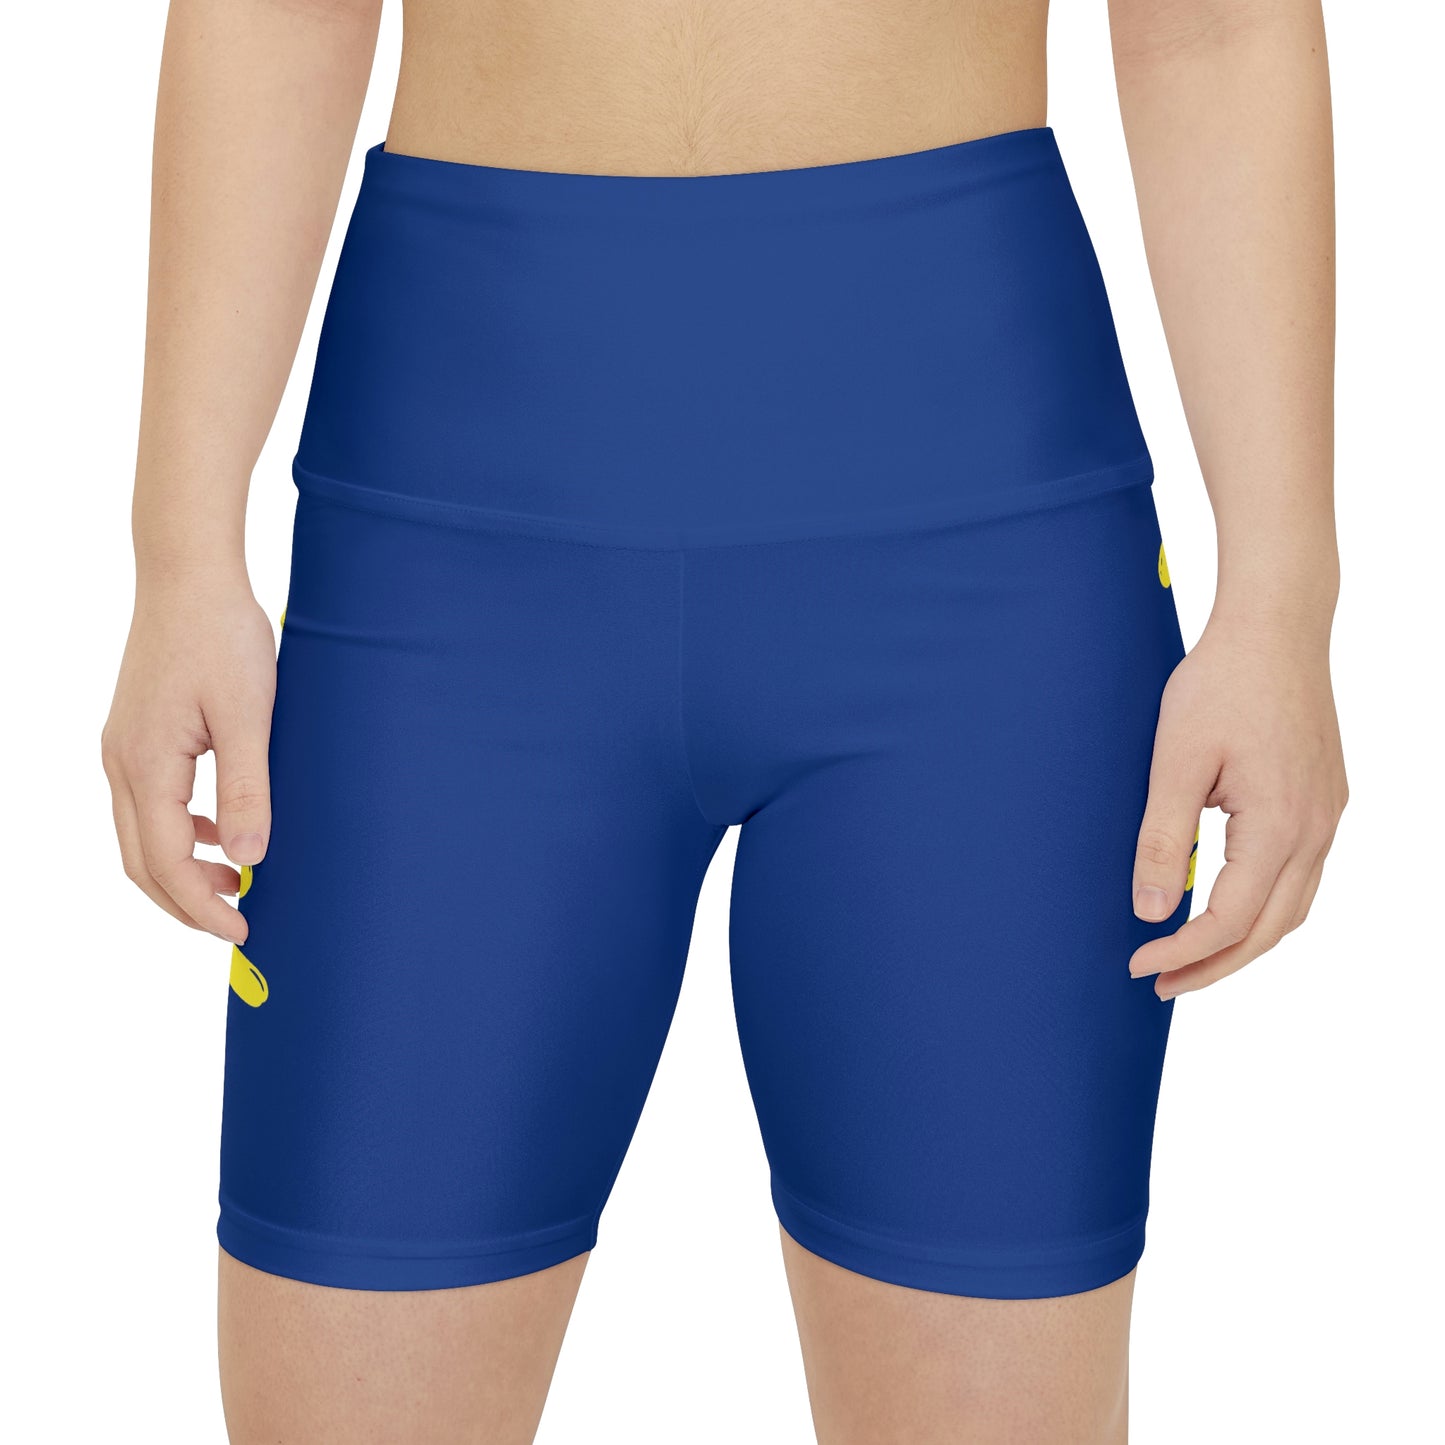 FUN - Women's Workout Shorts